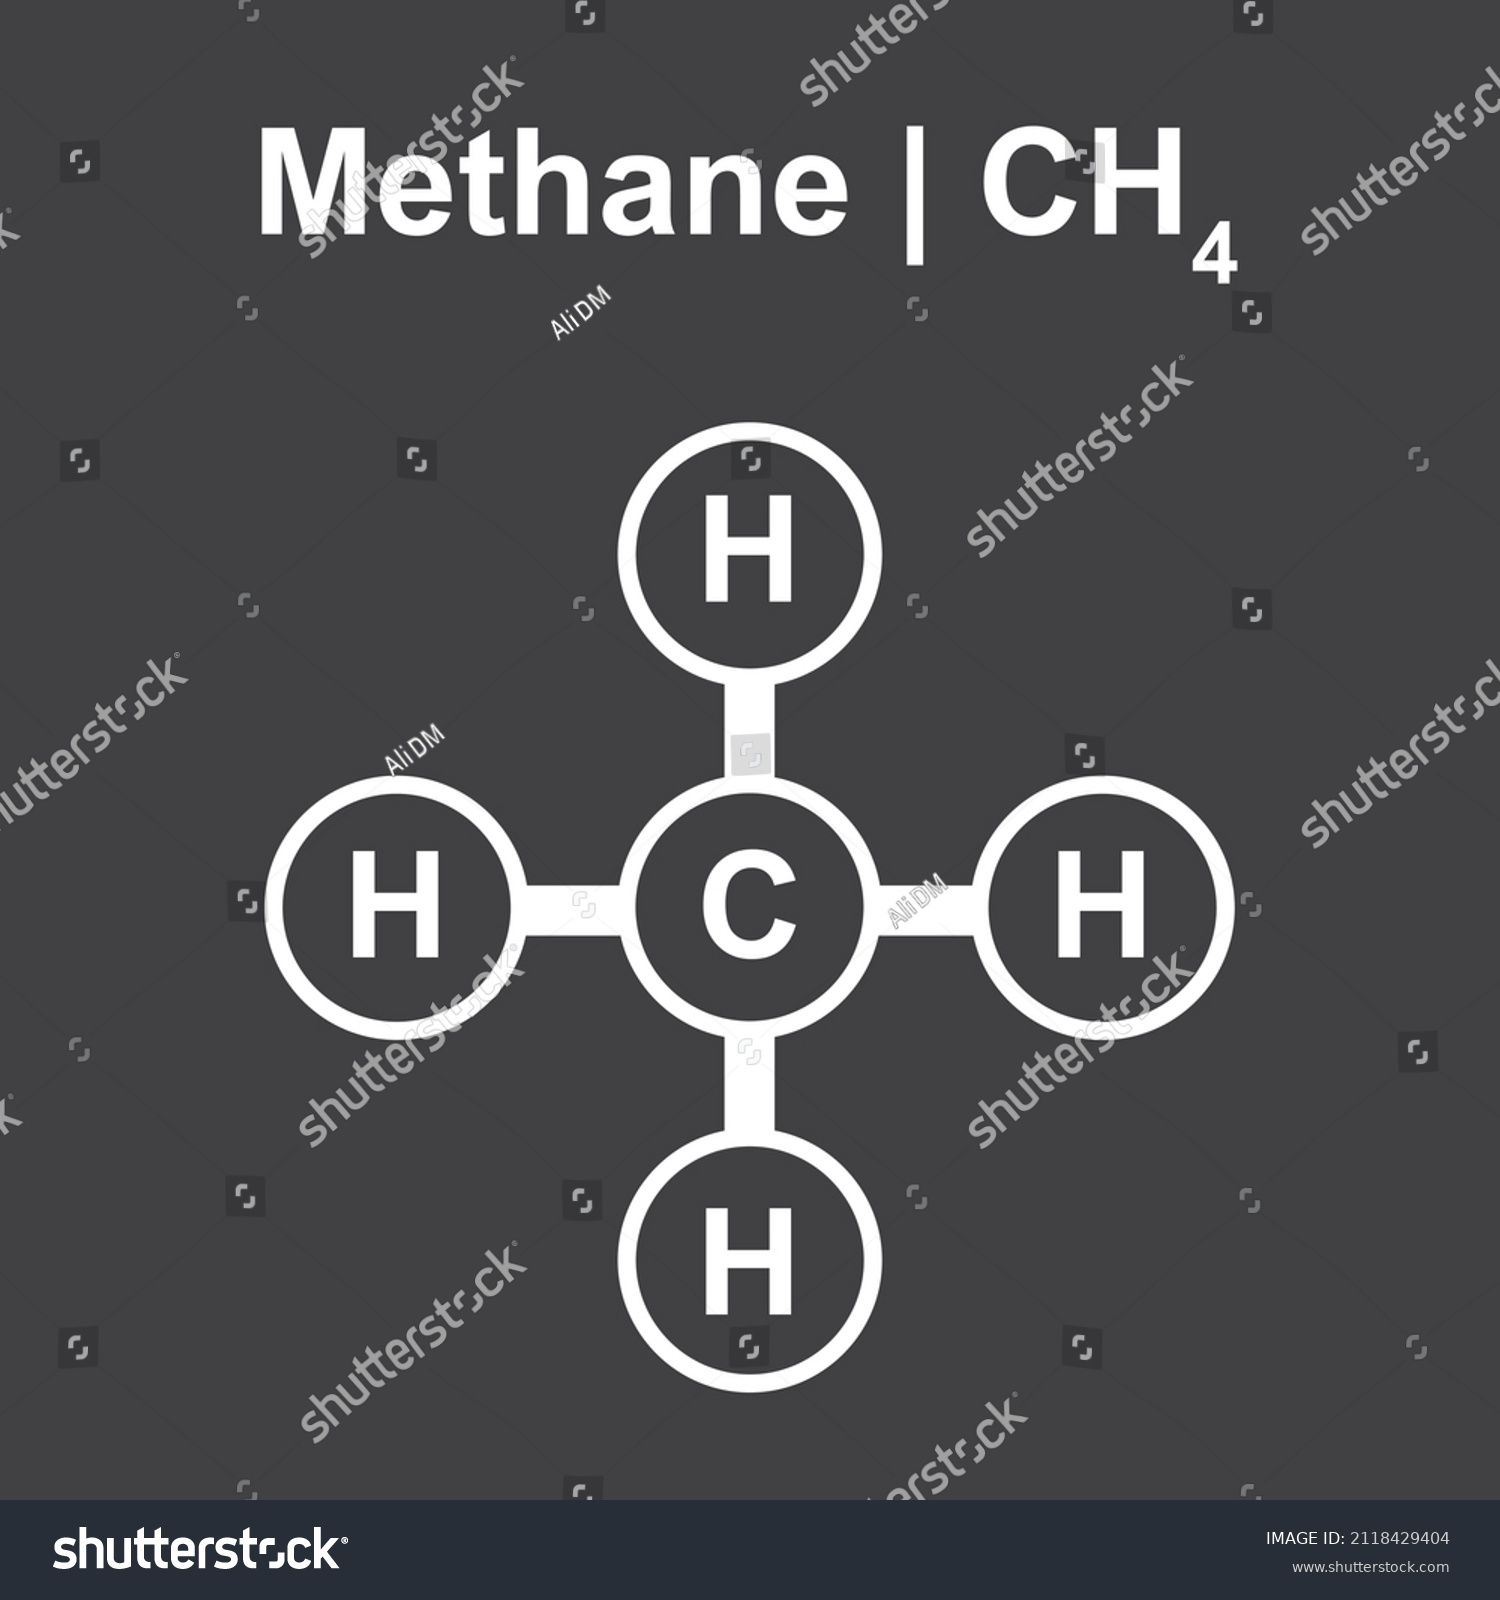 Molecular Model Methane Ch4 Molecule Vector Stock Vector Royalty Free